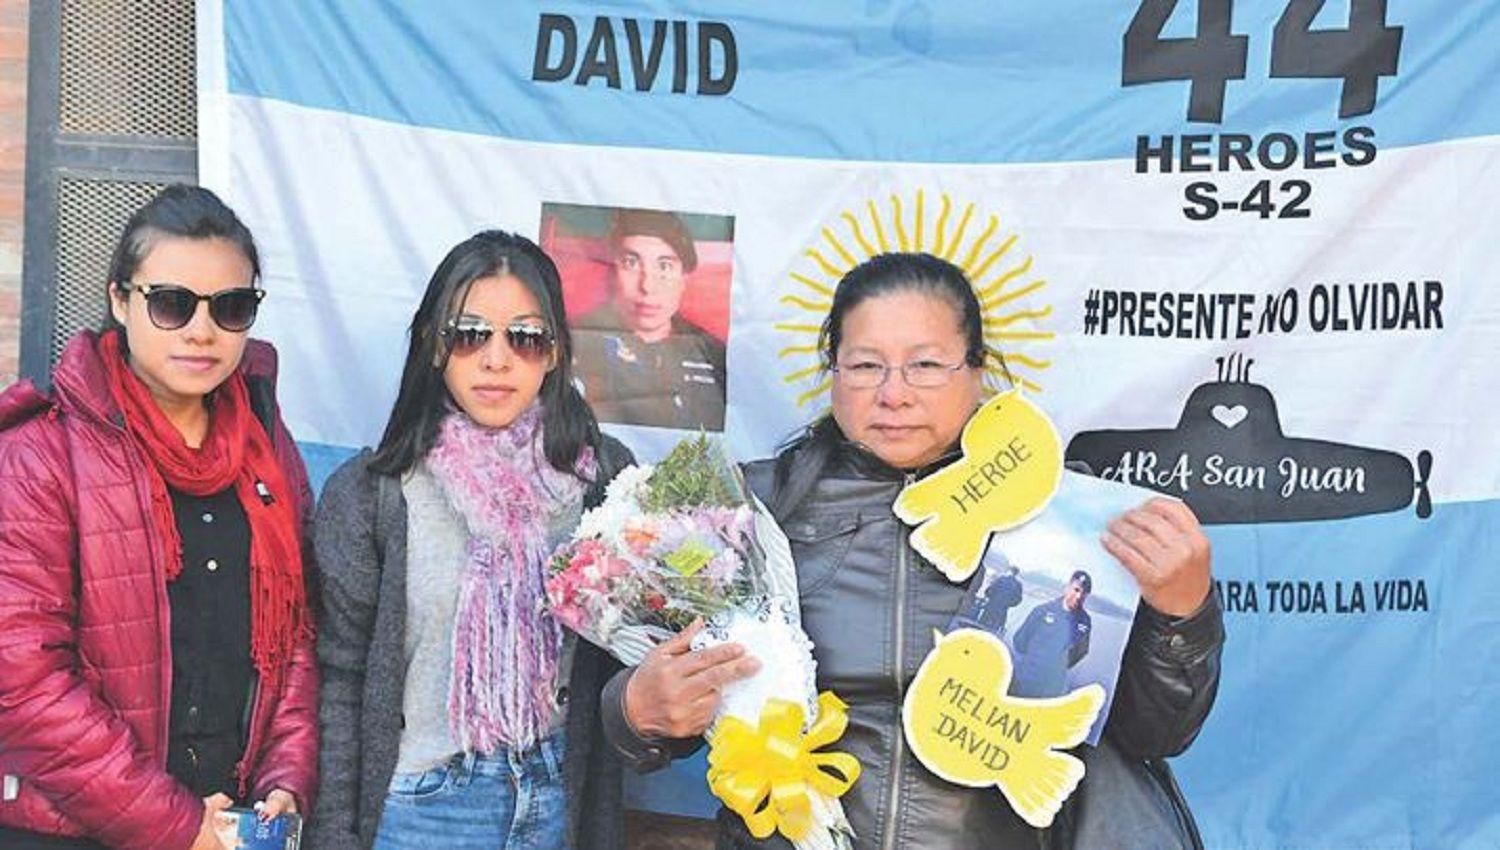 La madre y las hermanas de David Meli�n ser�n una de las familias indemnizadas tras el fatal desenlace del submarino y todos sus ocupantes